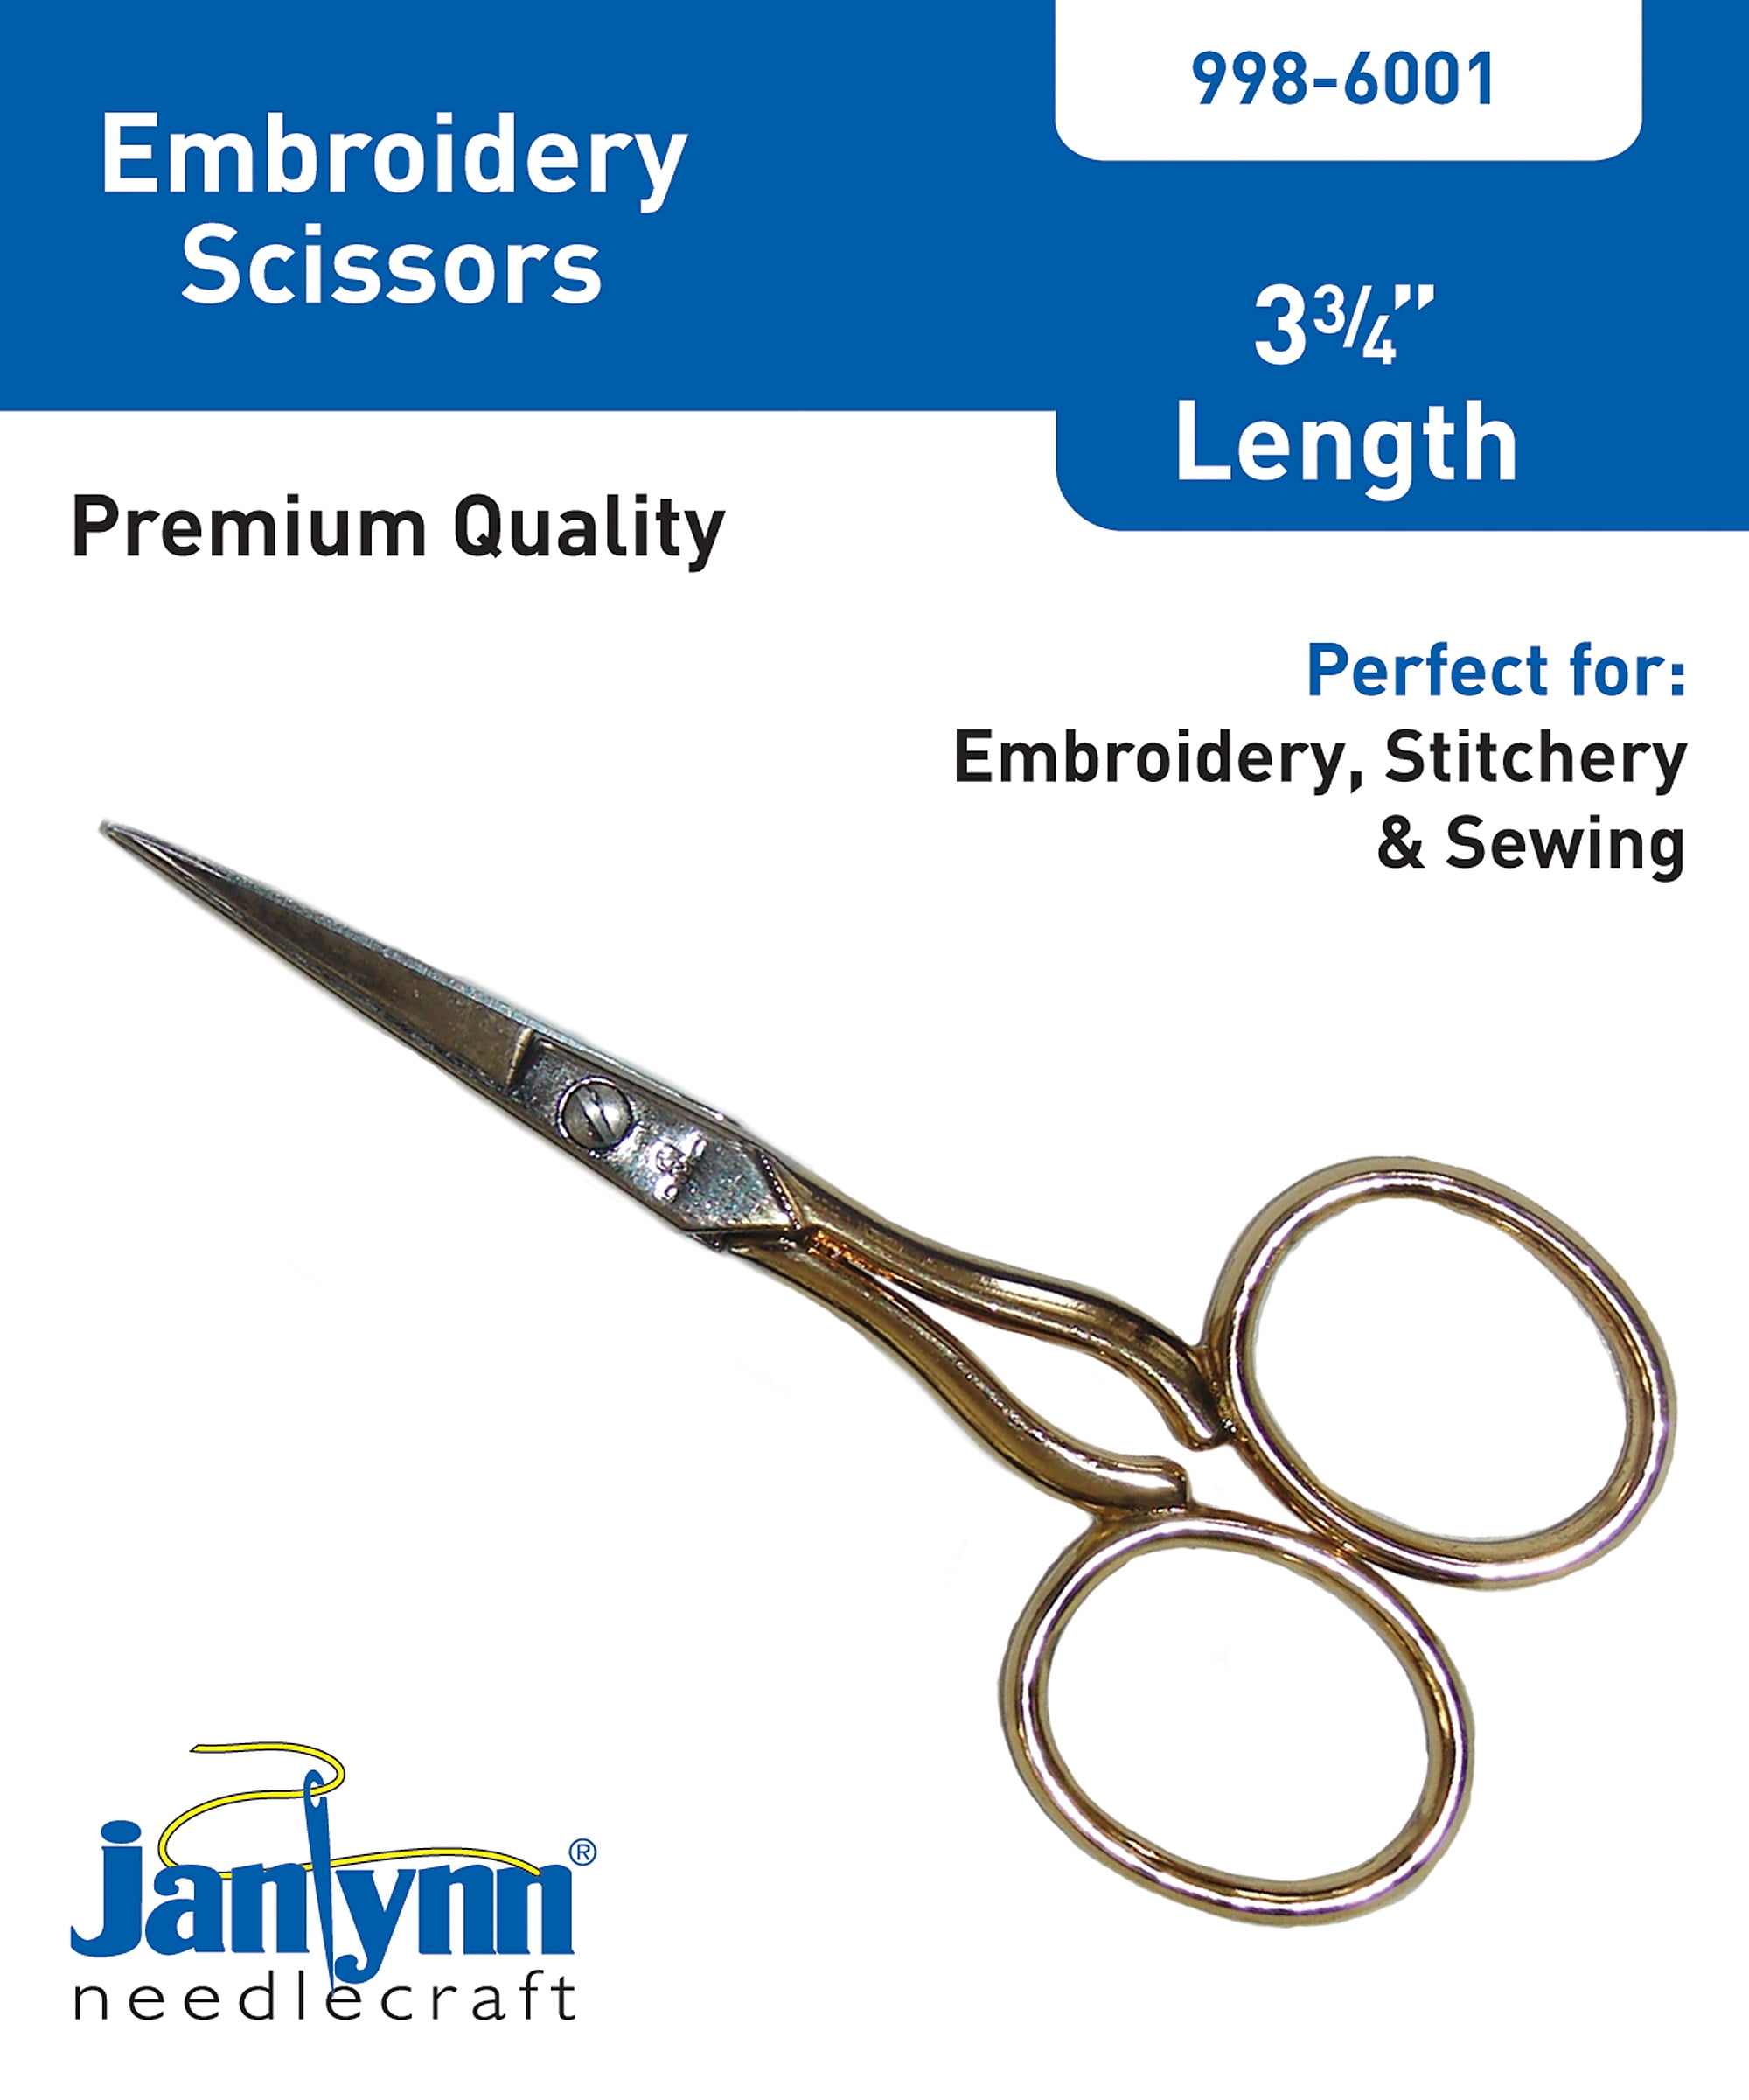 DMC Embroidery Scissors 3 3/4 Gold/Silver